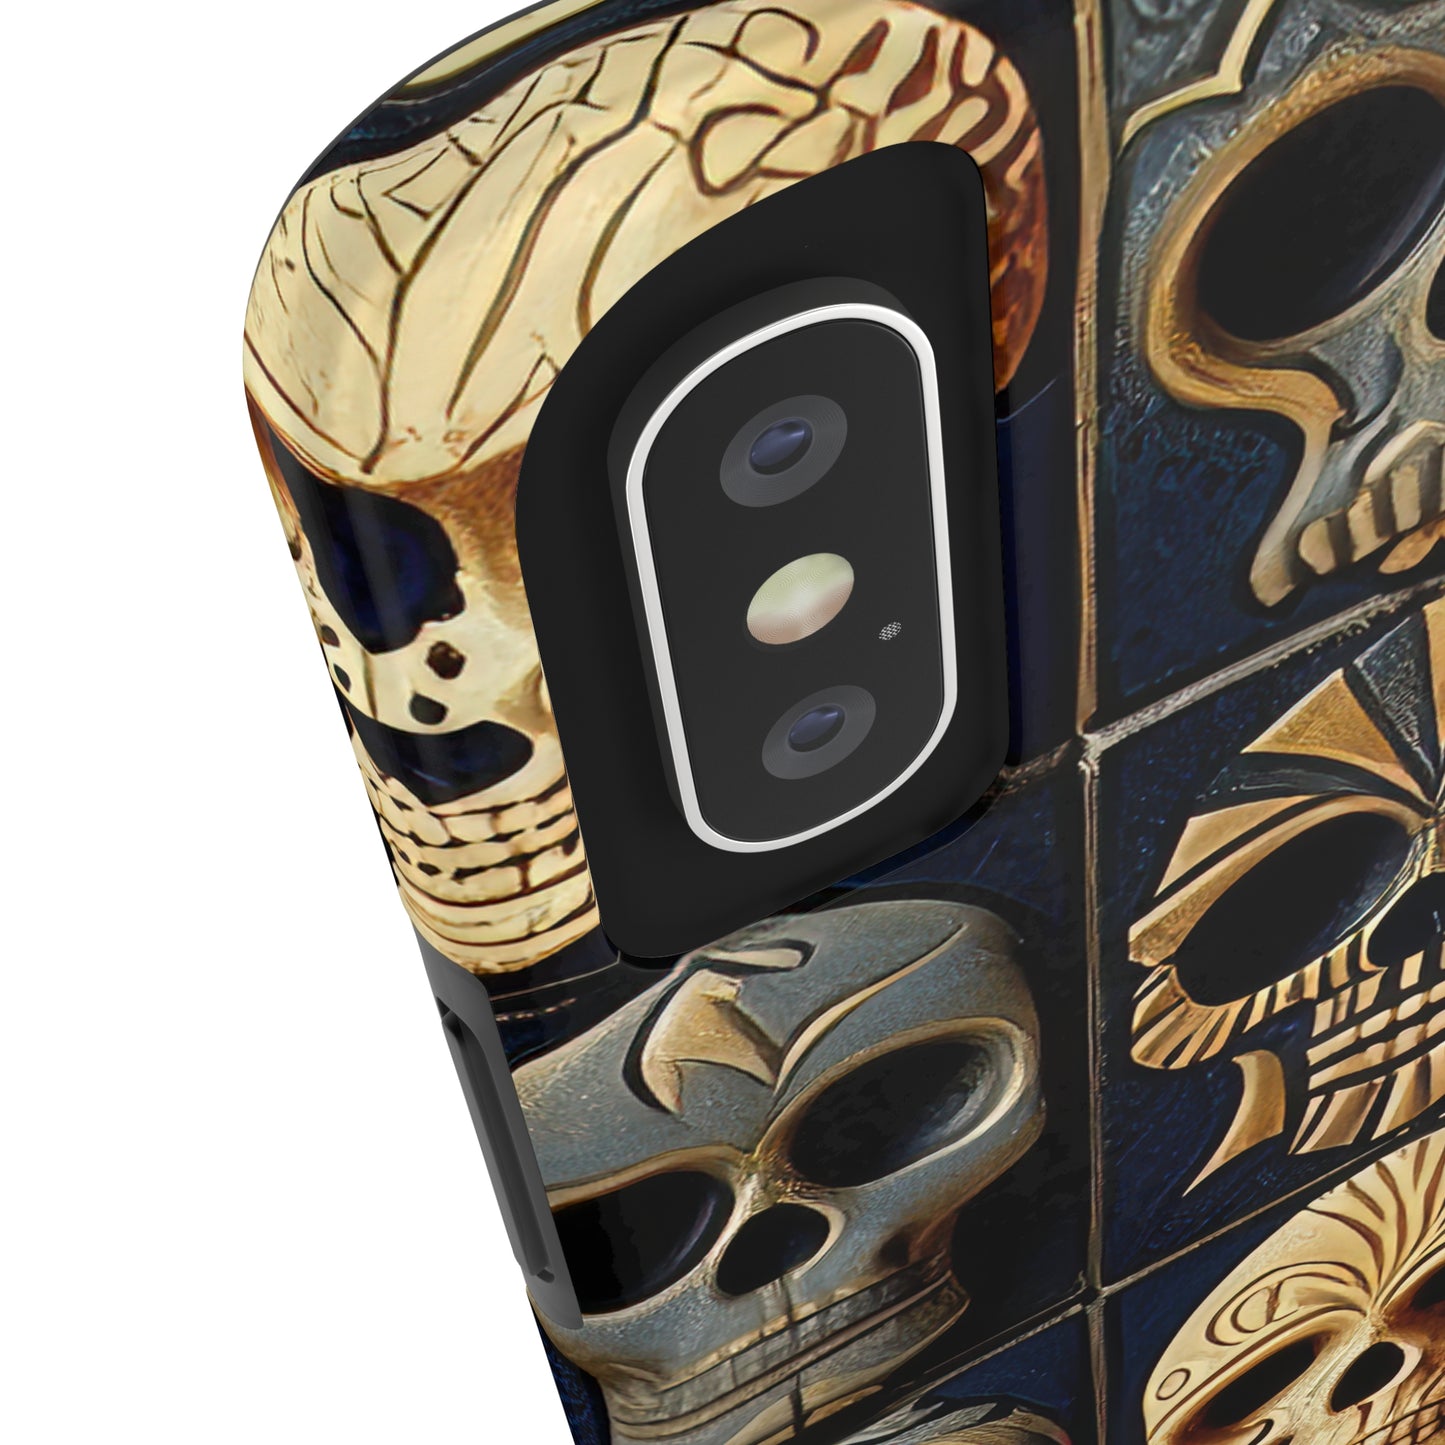 Metallic Chrome Skulls and classic Designed 17 Tough Phone Cases